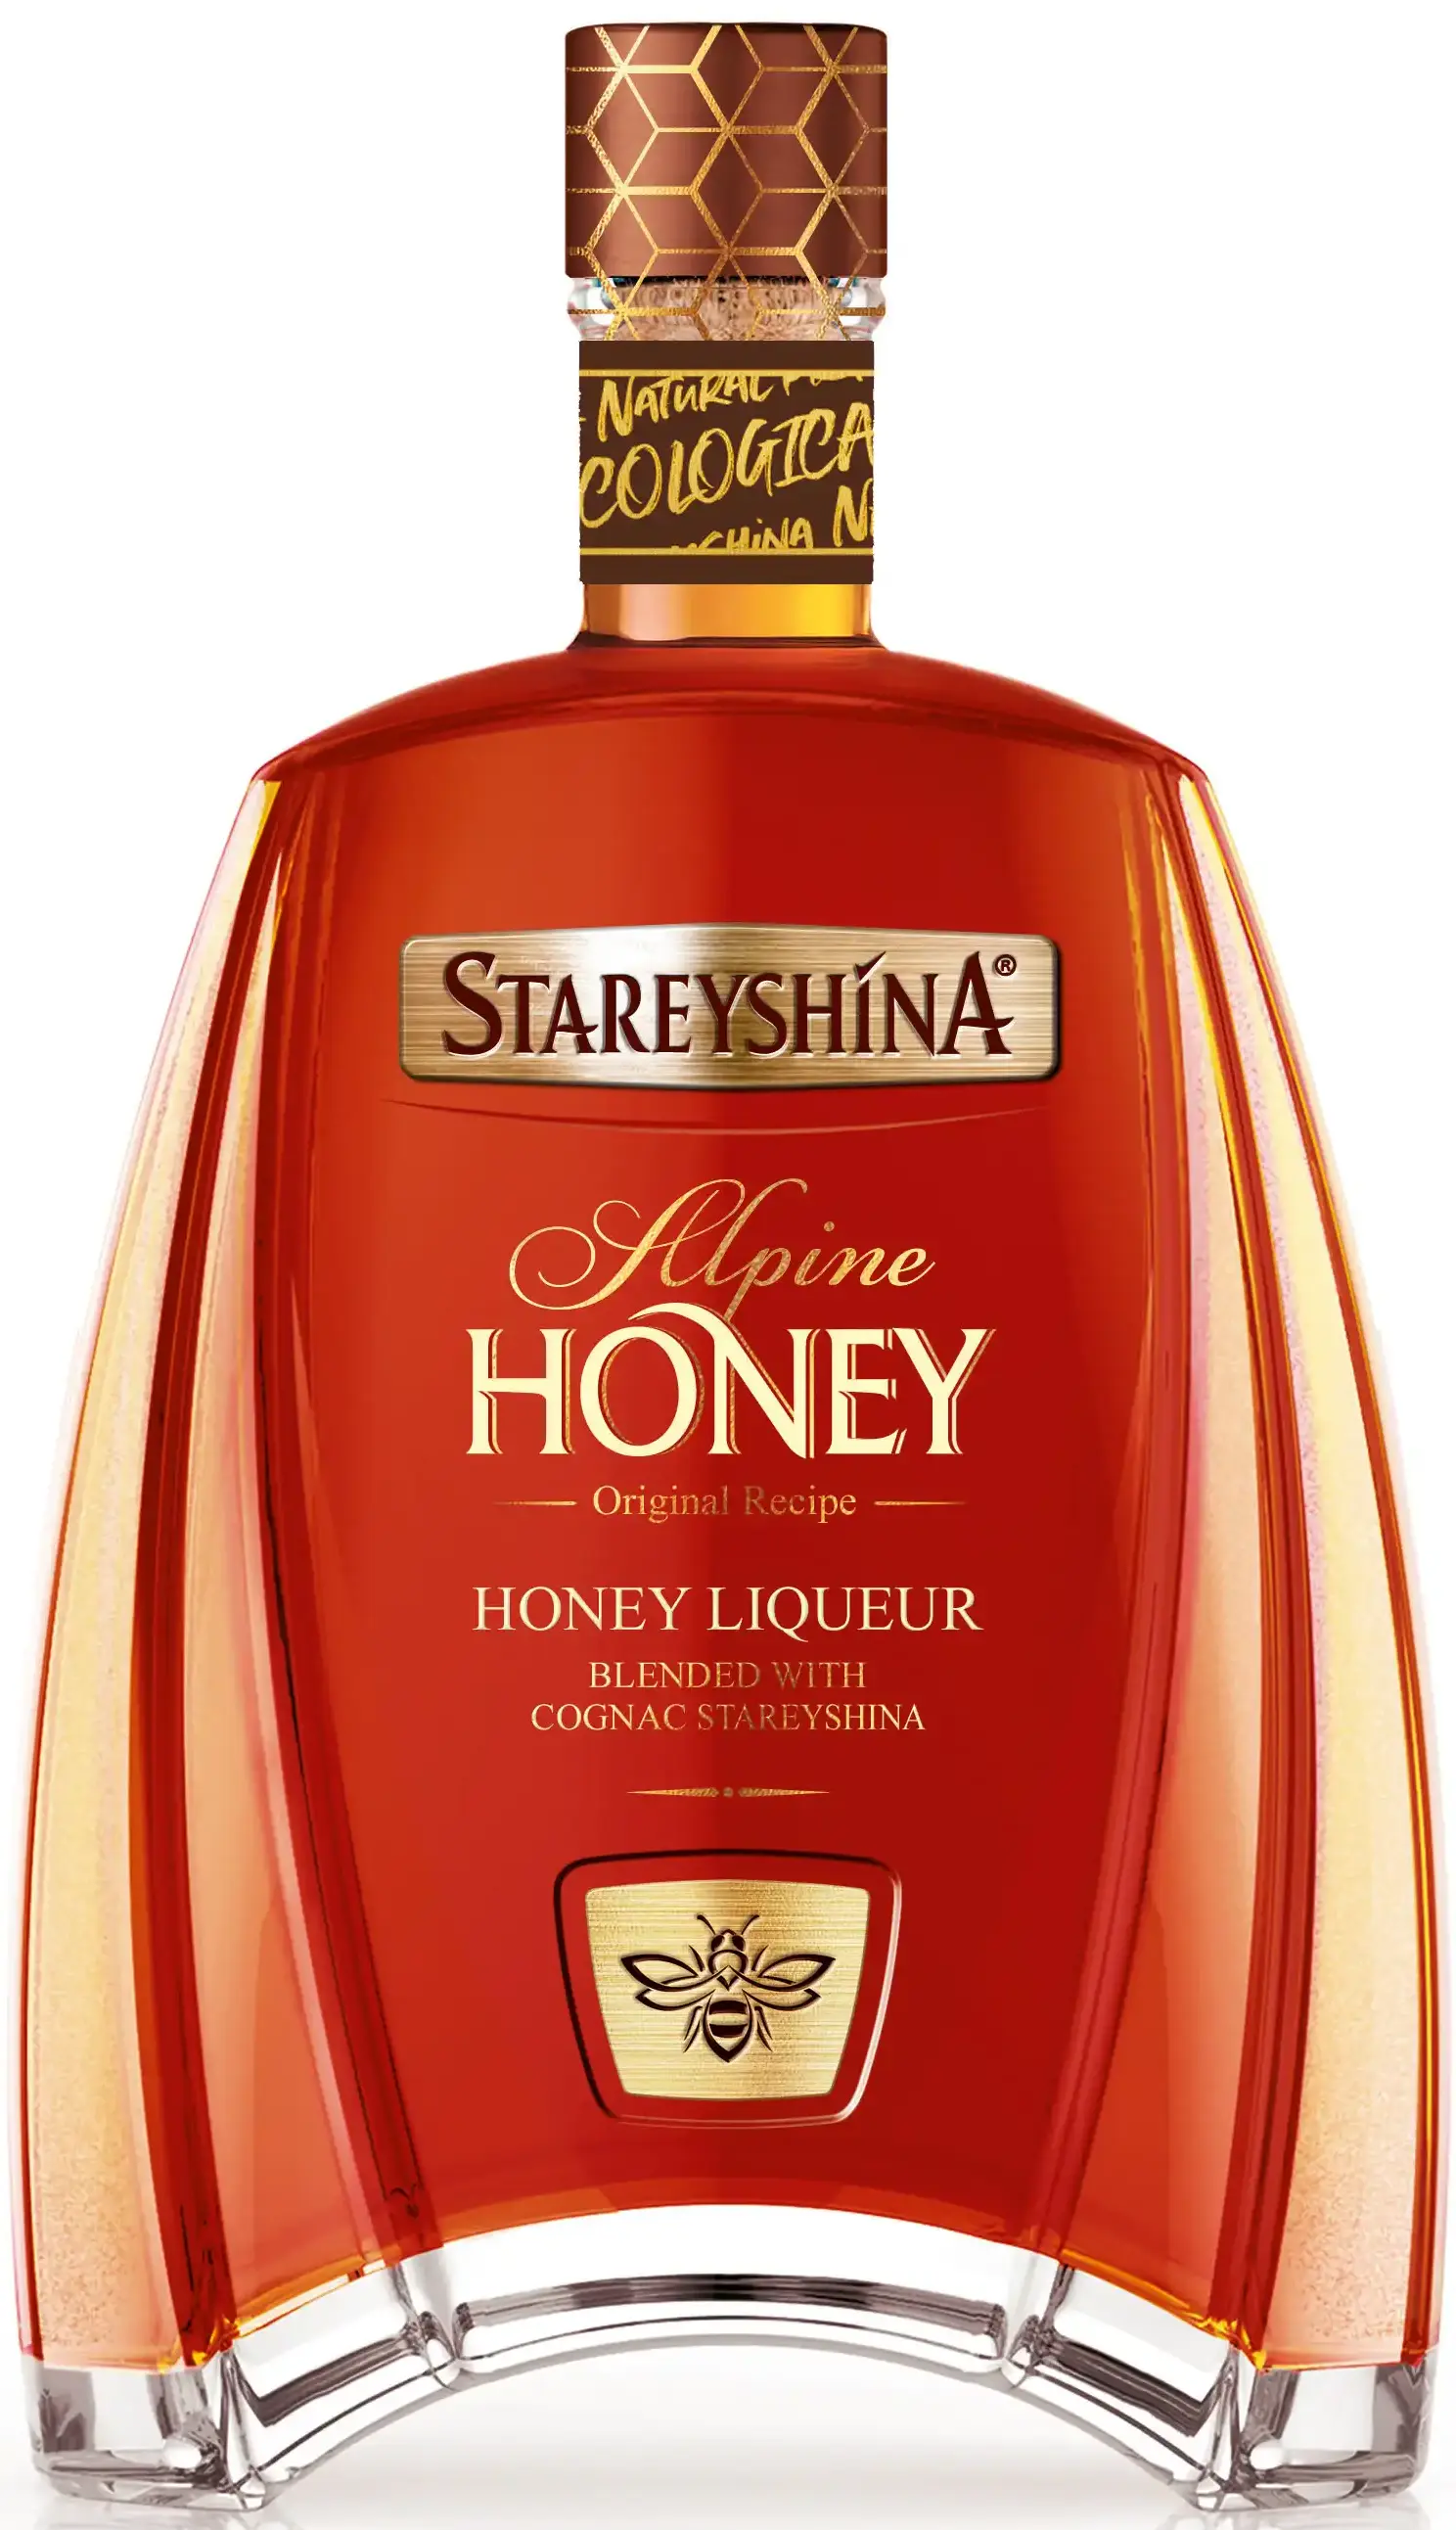 Старейшина Альпин Хани (Elder Alpine Honey)